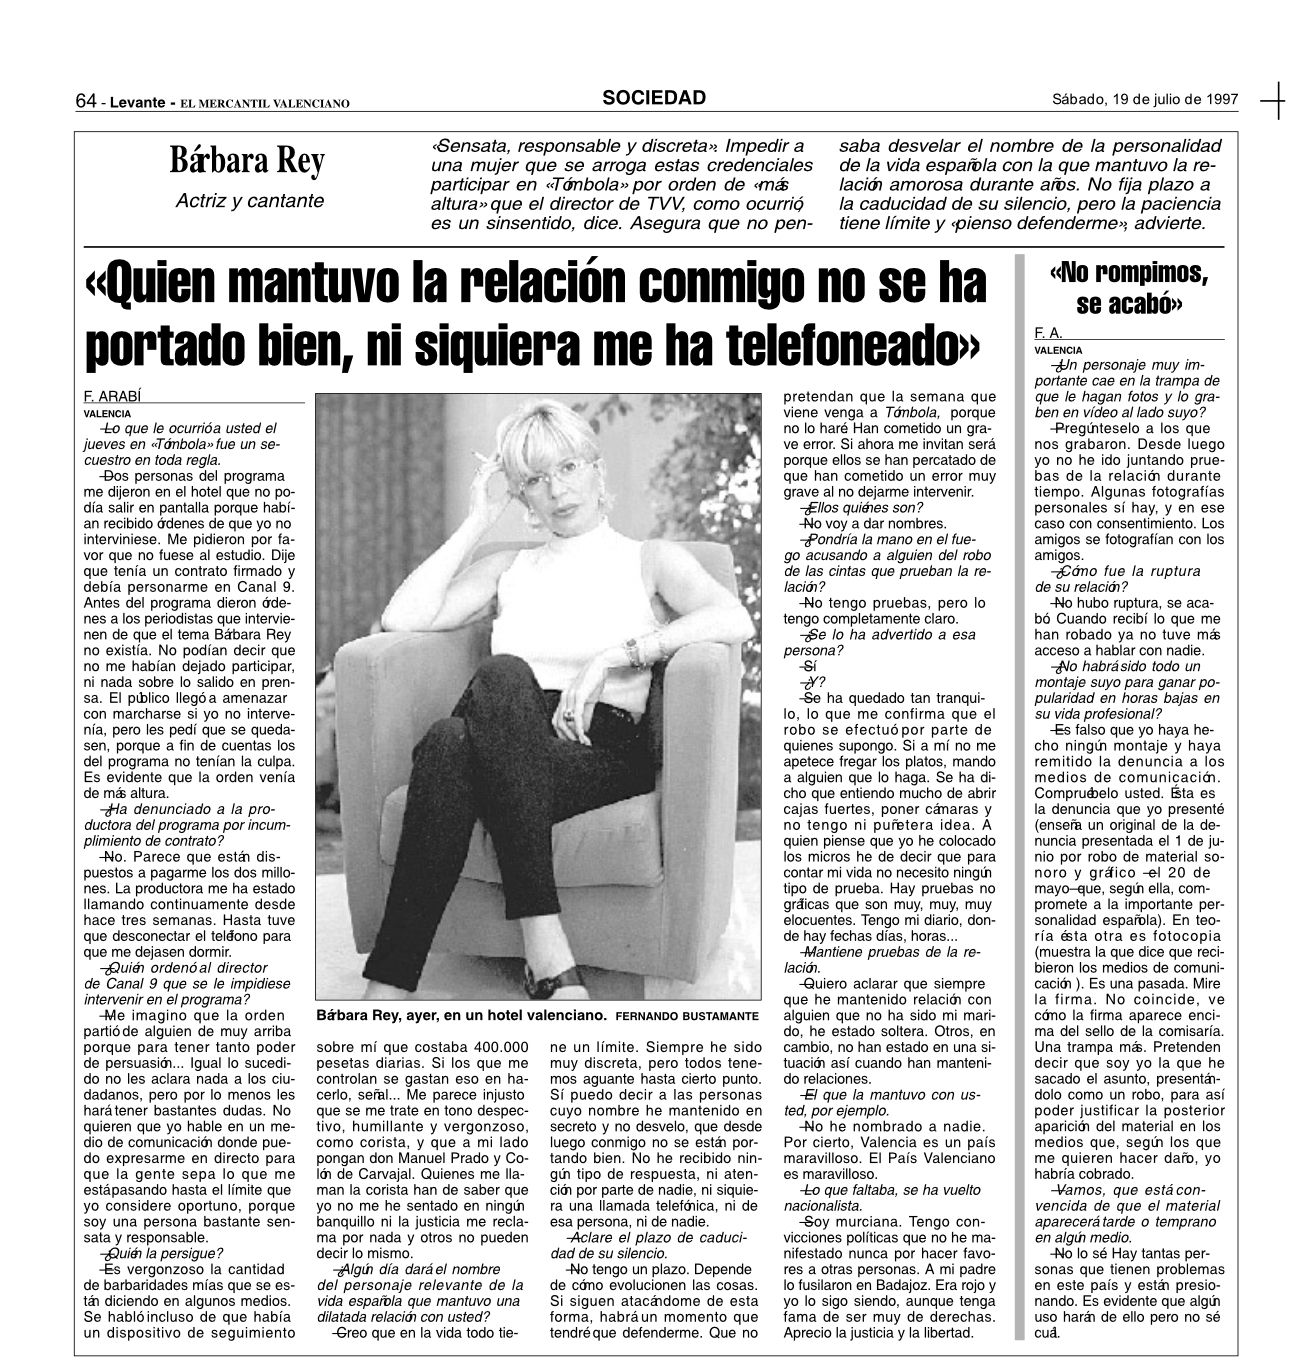 Archivo de la entrevista publicada en 1997 por Levante-EMV.